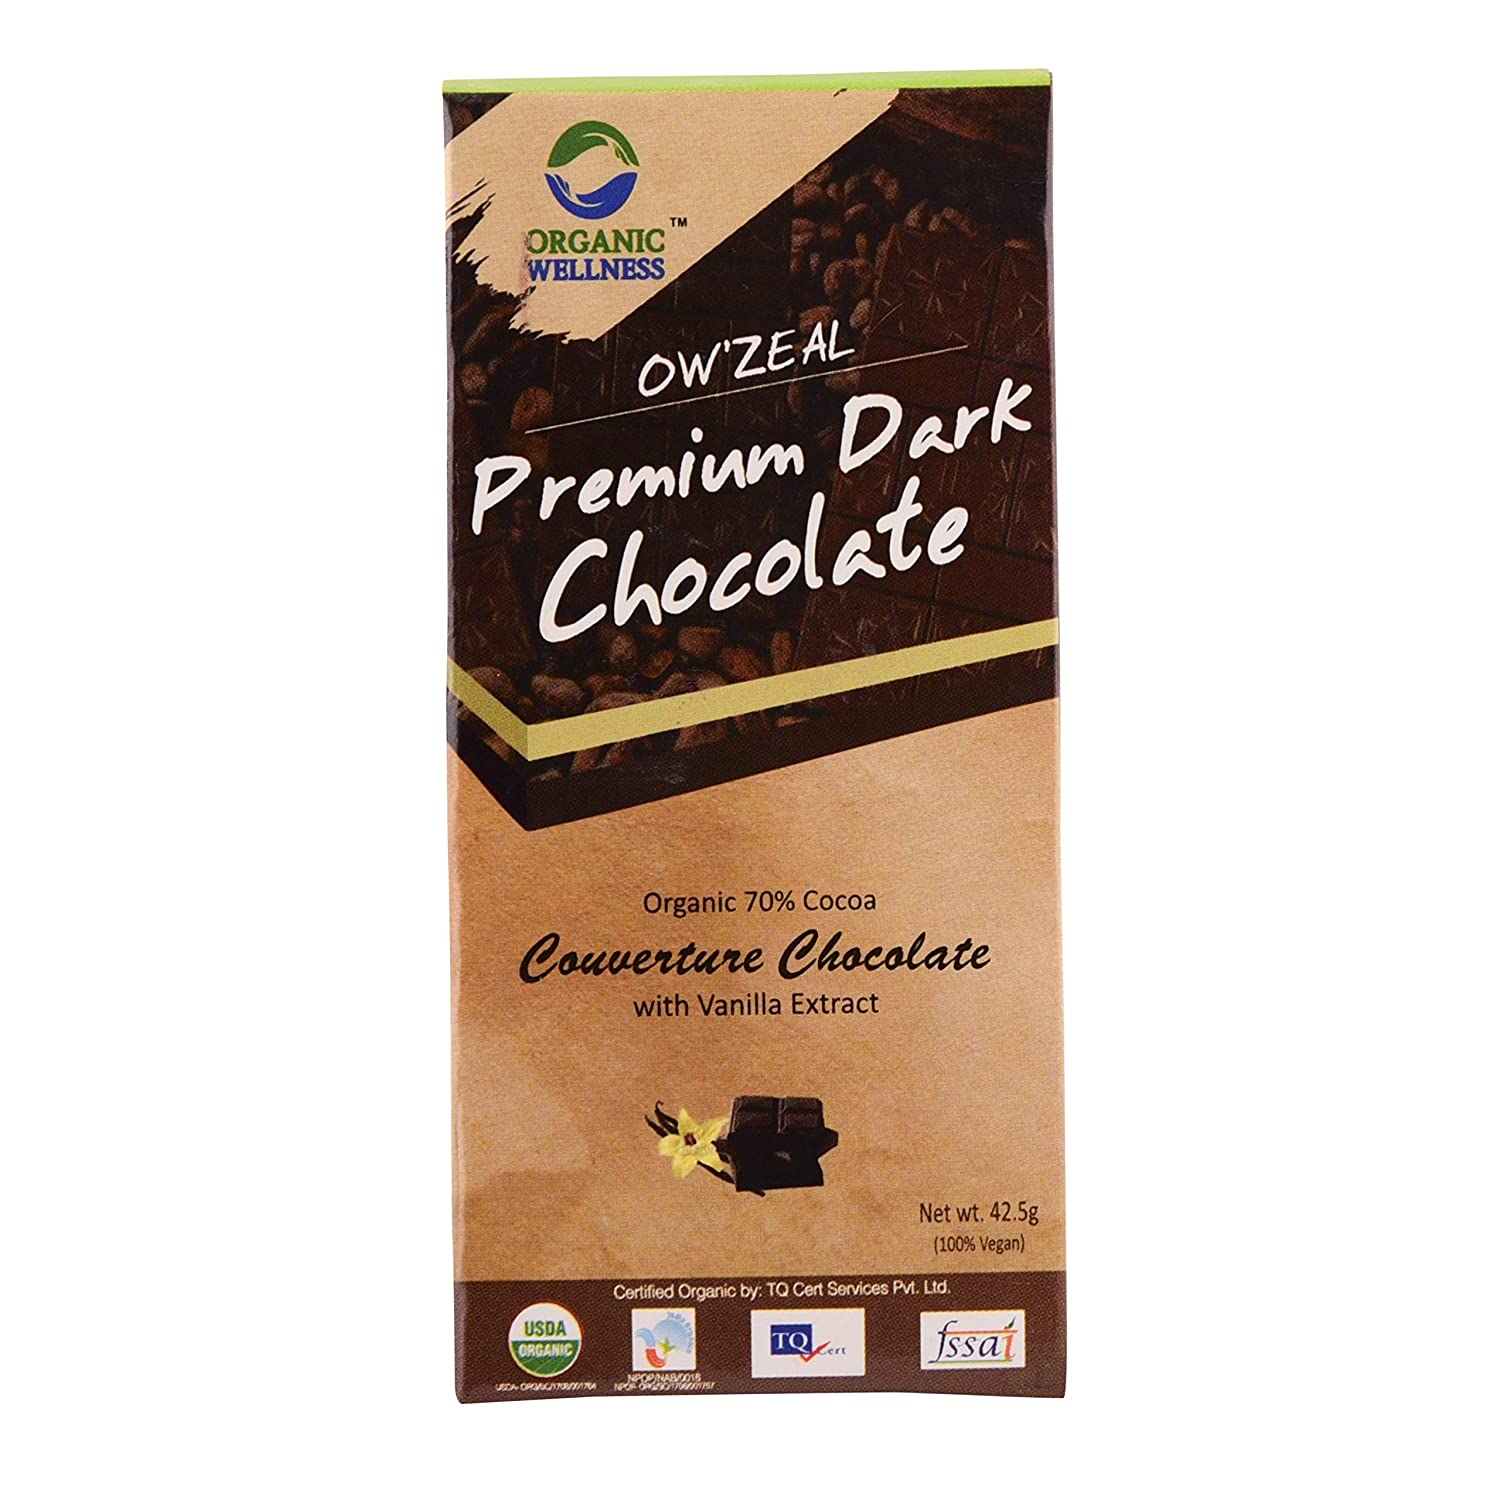 DARK PREMIUM CHOCOLATE